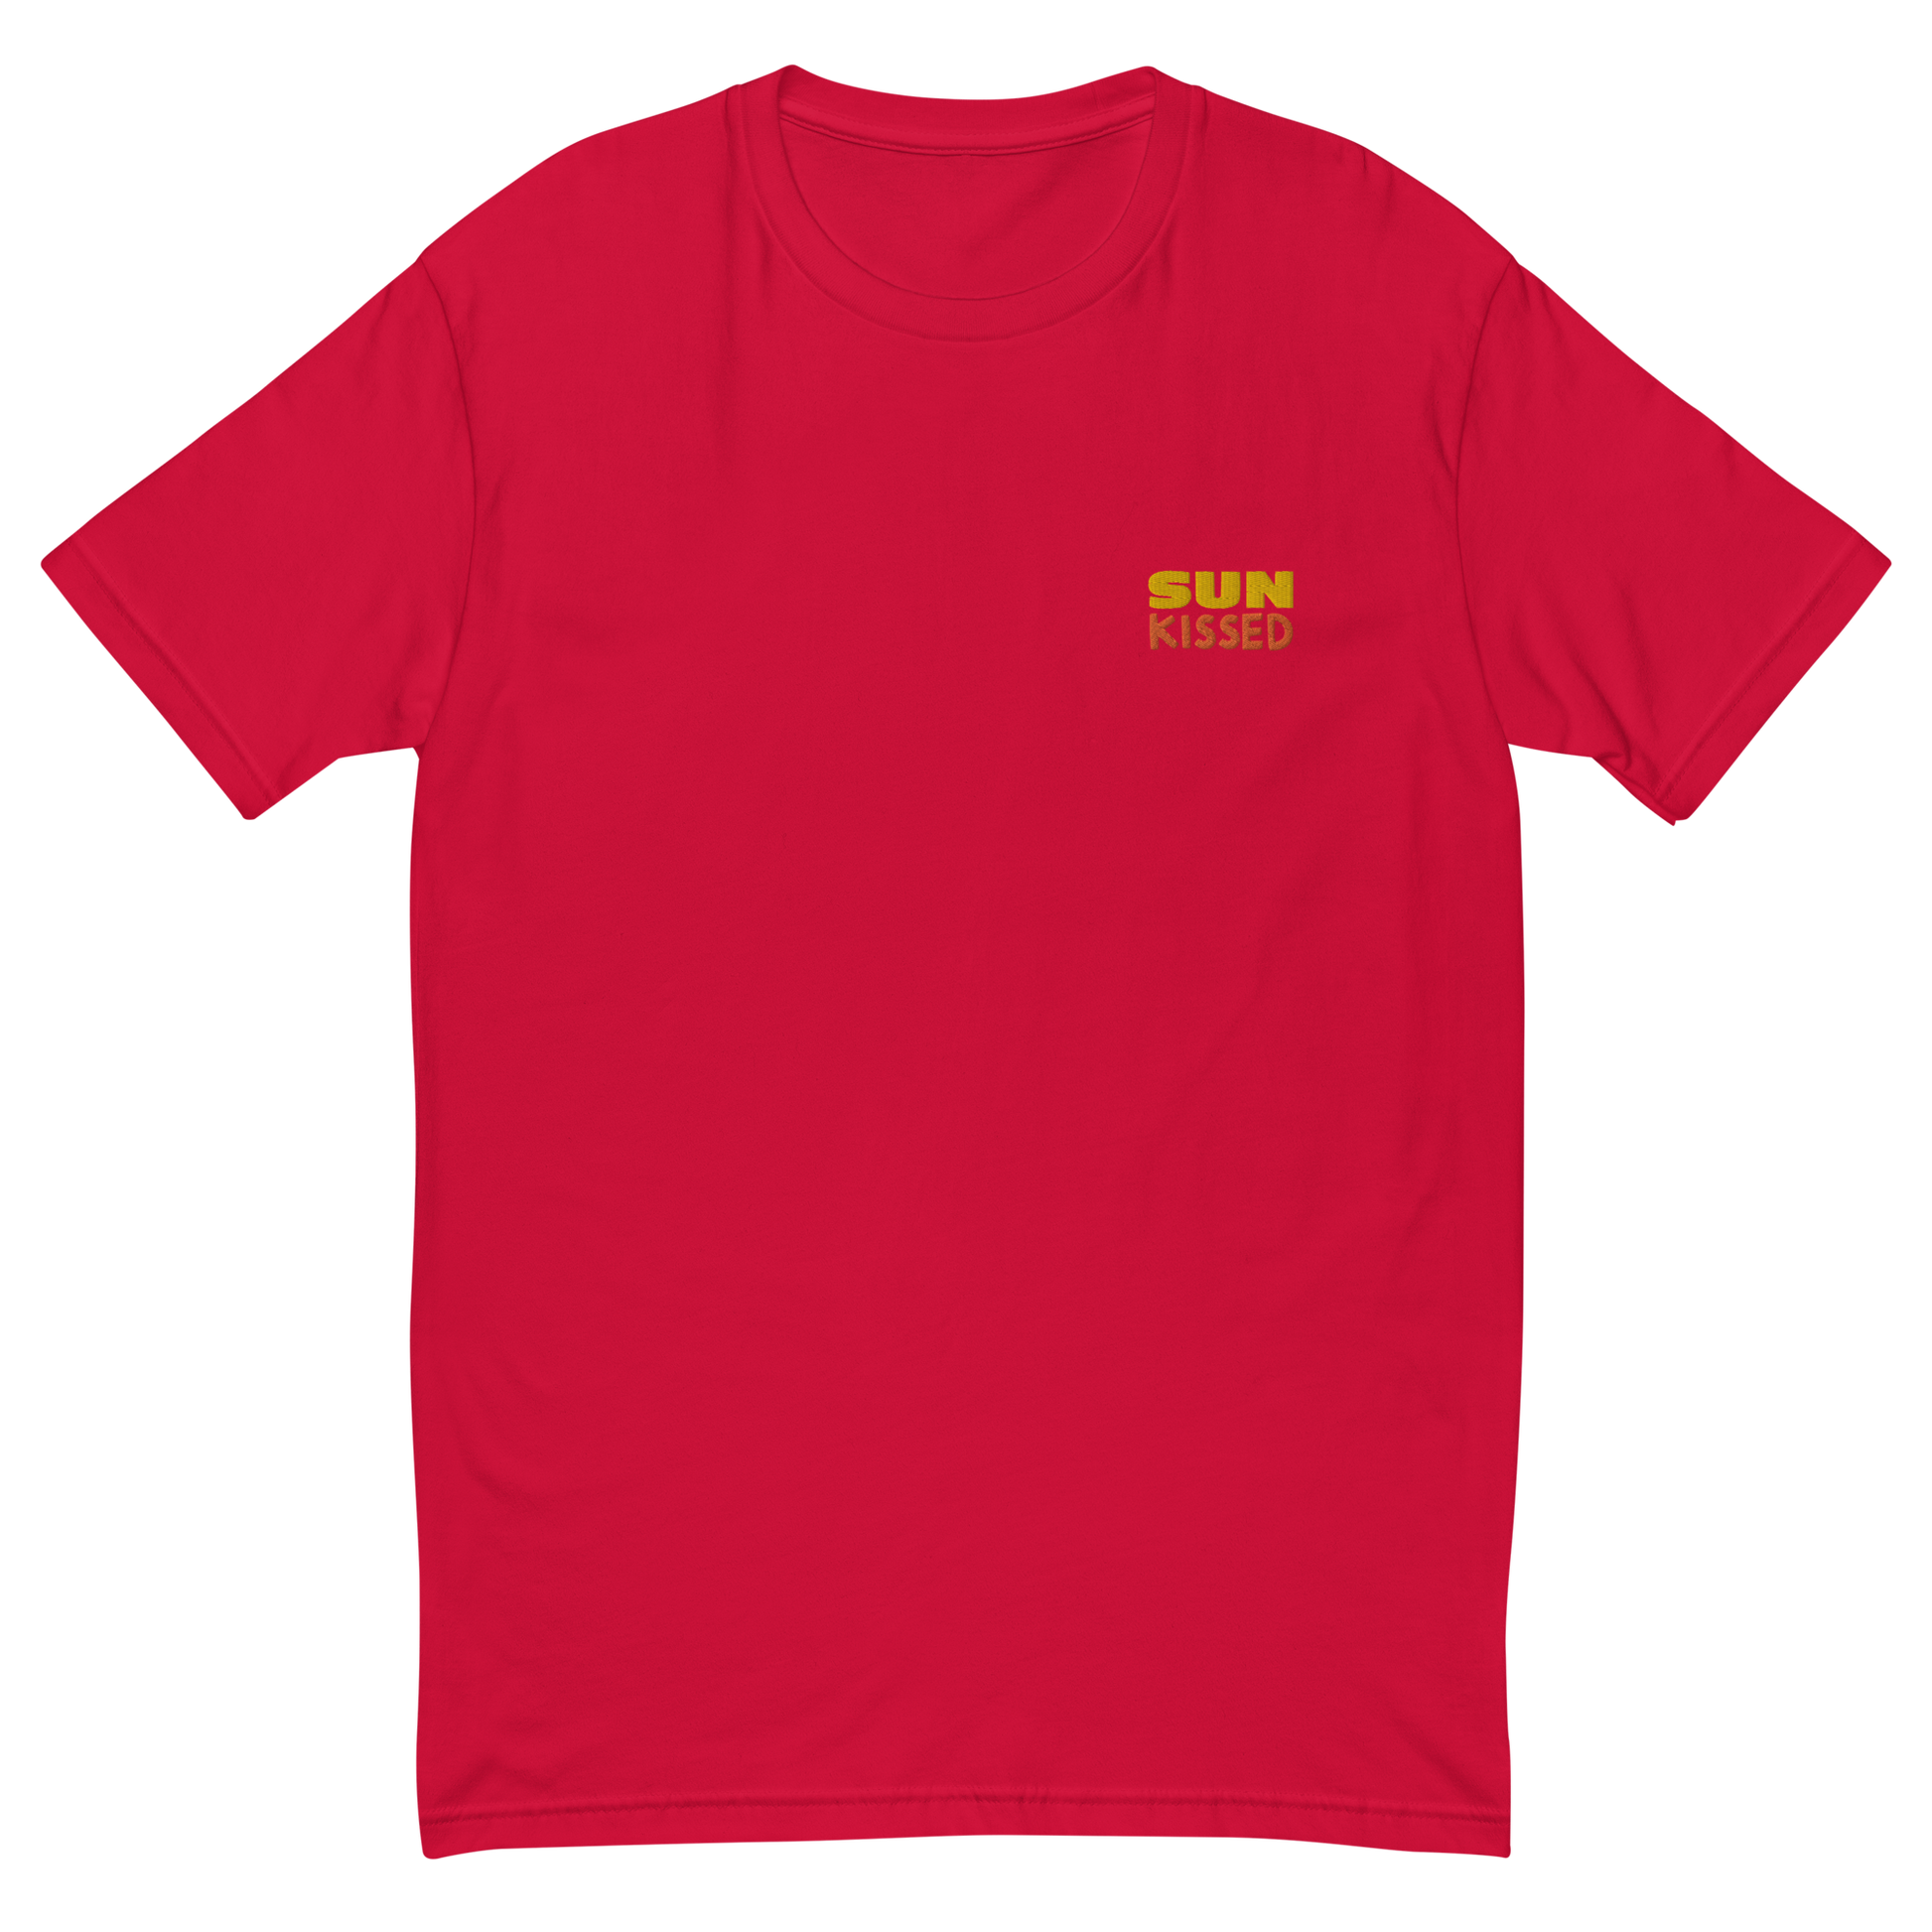 Short Sleeve T-shirt - best price from Maltashopper.com 8596253_4865, 8596253_4866, 8596253_4867, 8596253_4868, 8596253_4869, 8596253_4870, 8596253_4871, 8596253_4886, 8596253_4887, 8596253_4888